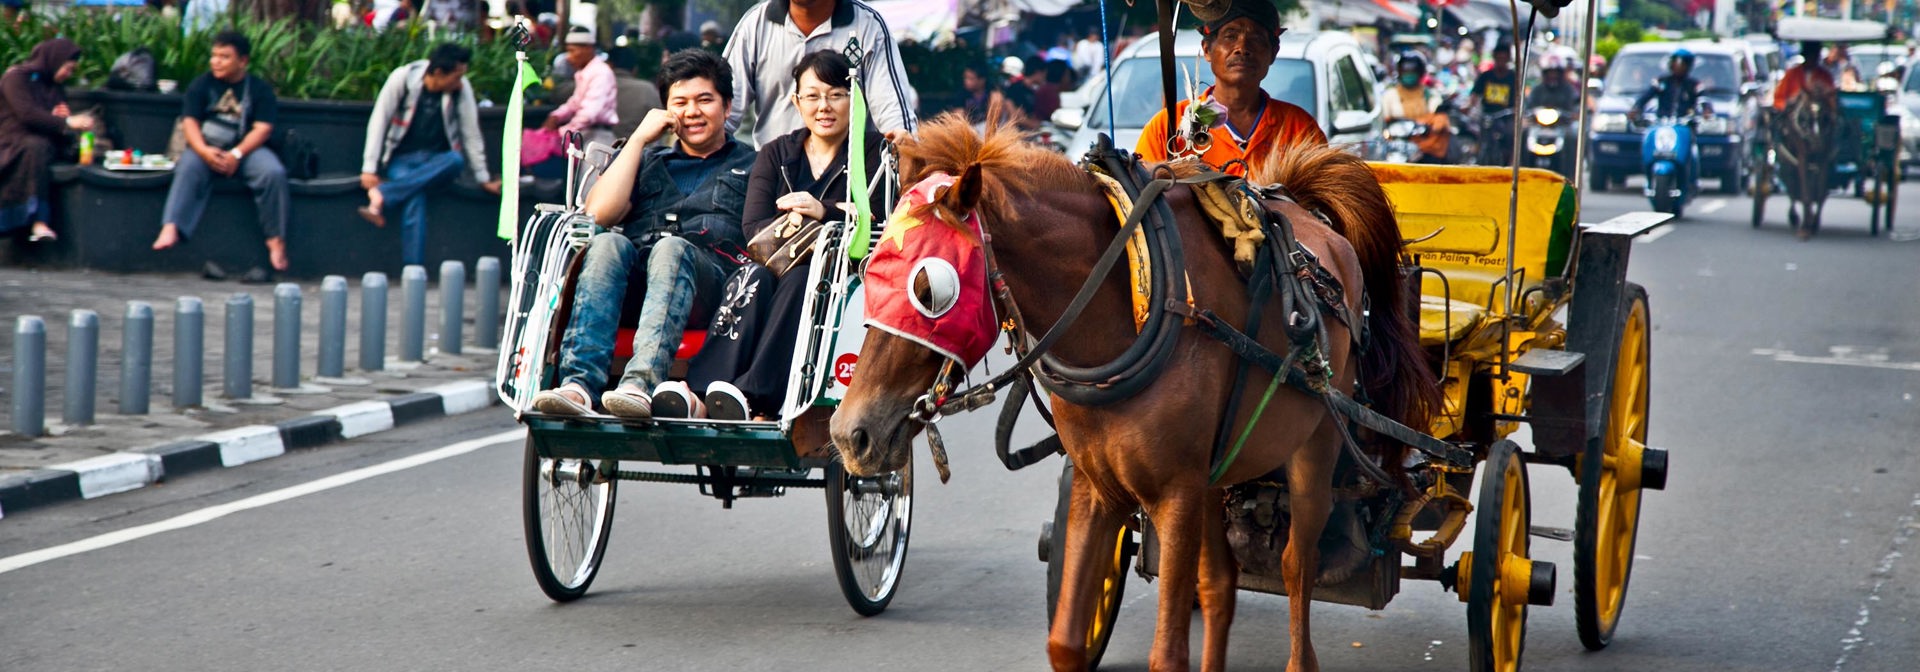 Indonesien - java_yogyakarta_cykeltaxa_03